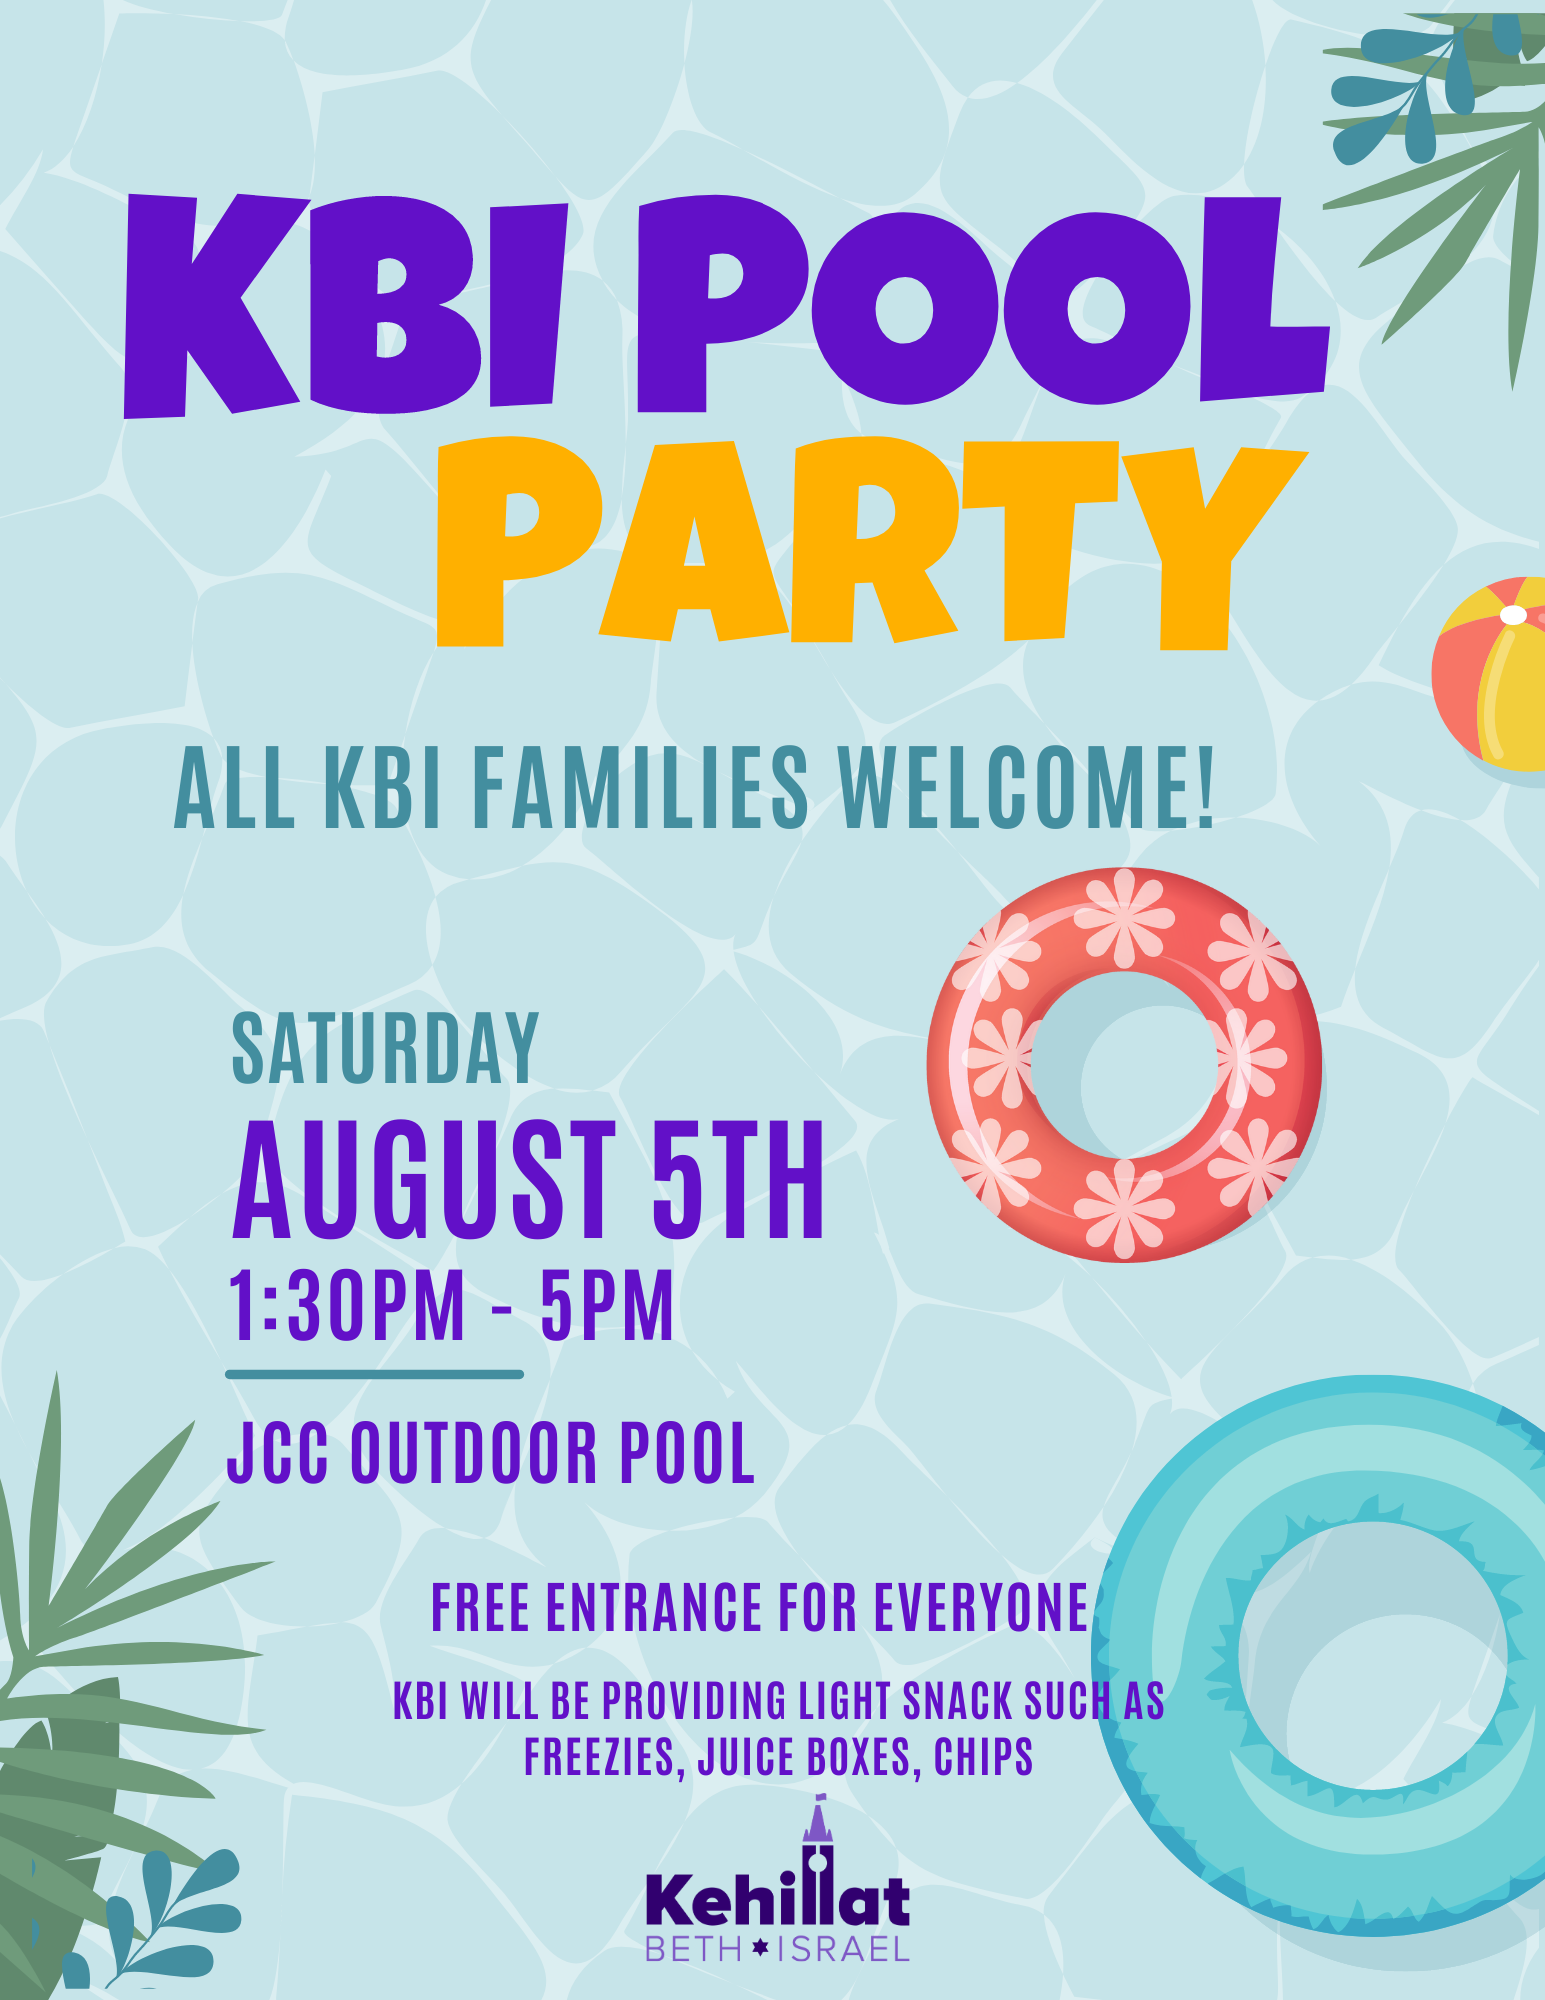 KBI Pool Party